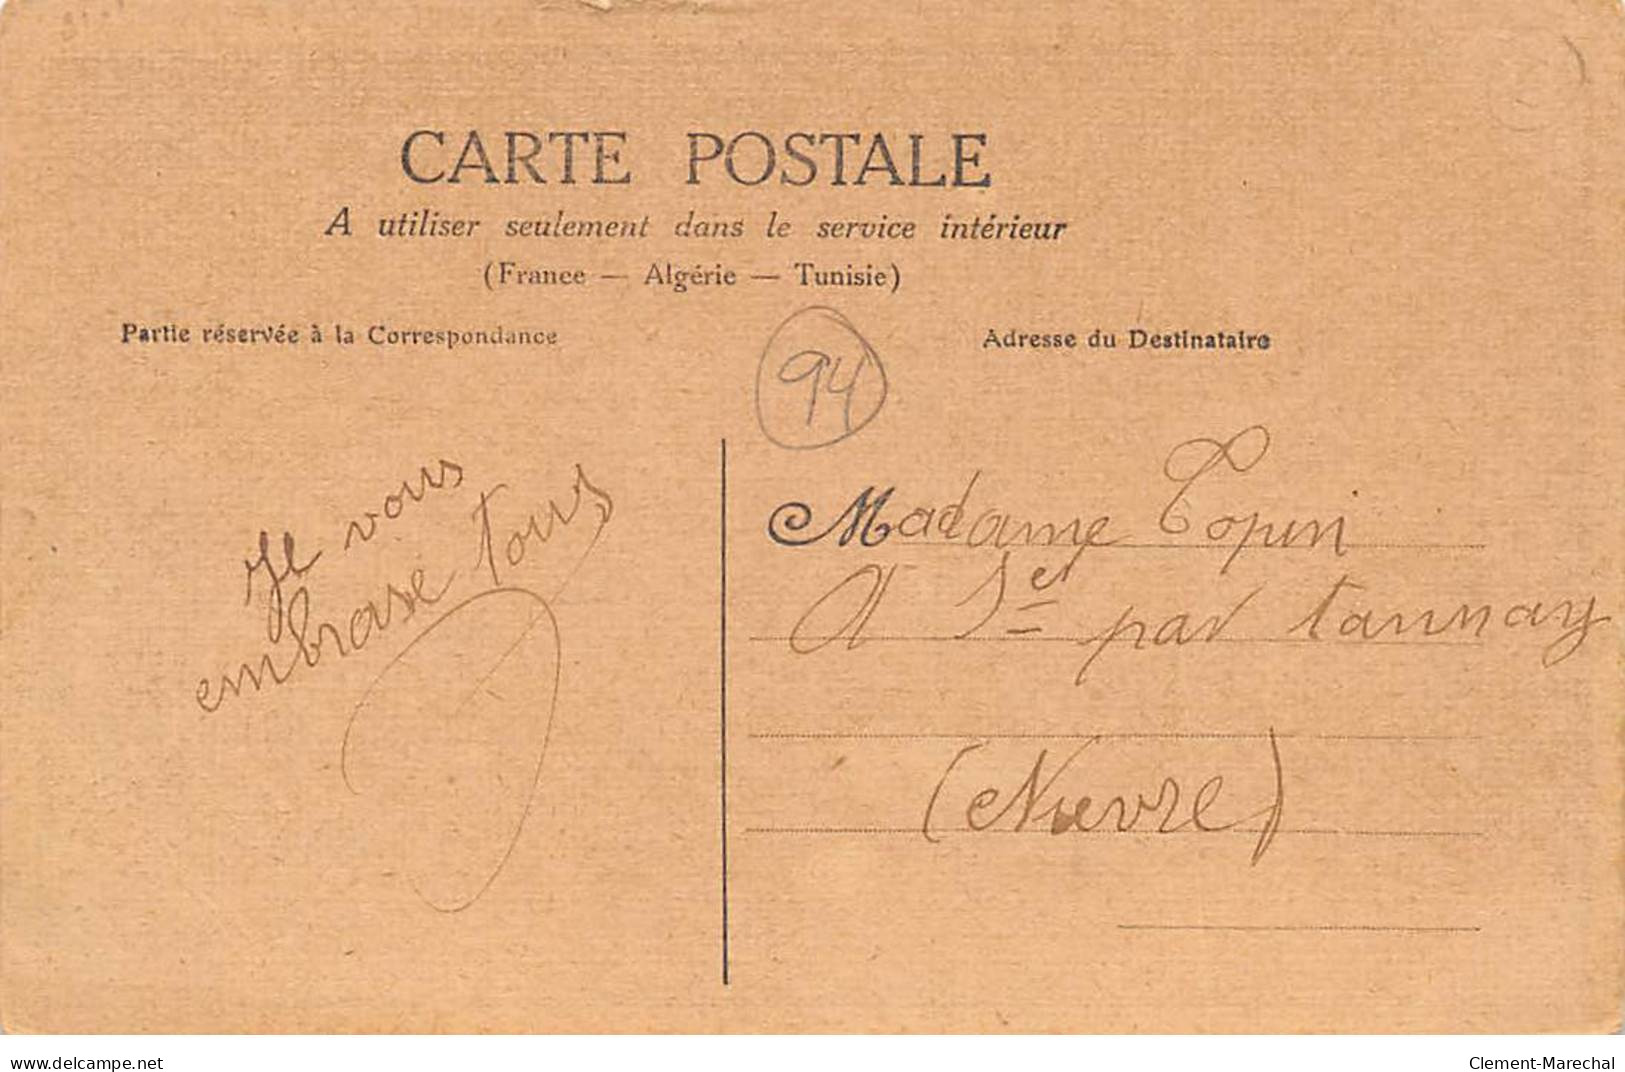 IVRY - Janvier 1910 - Sauvetage Des Habitants - M. Coutant, Député Porté à Dos D'homme - état - Ivry Sur Seine